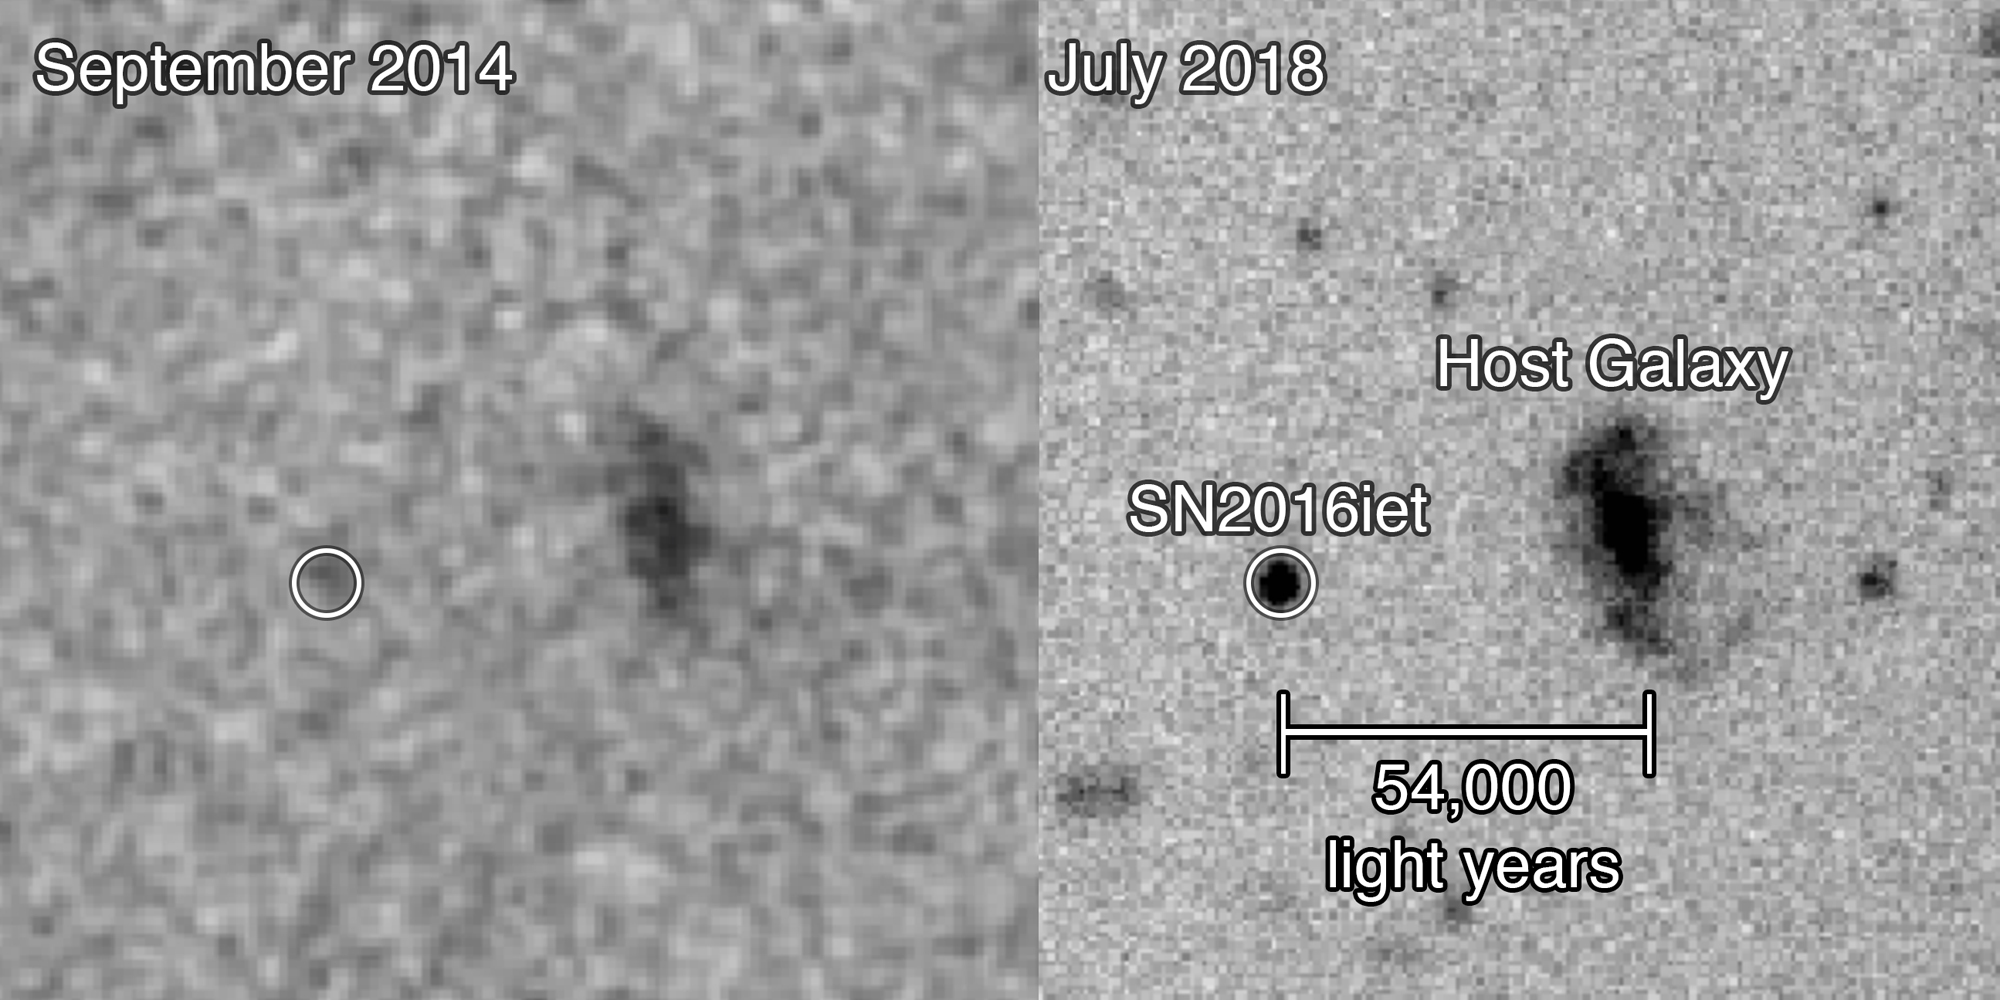 NIESAMOWITA supernowa, której zdjęcie zdumiało badaczy NASA